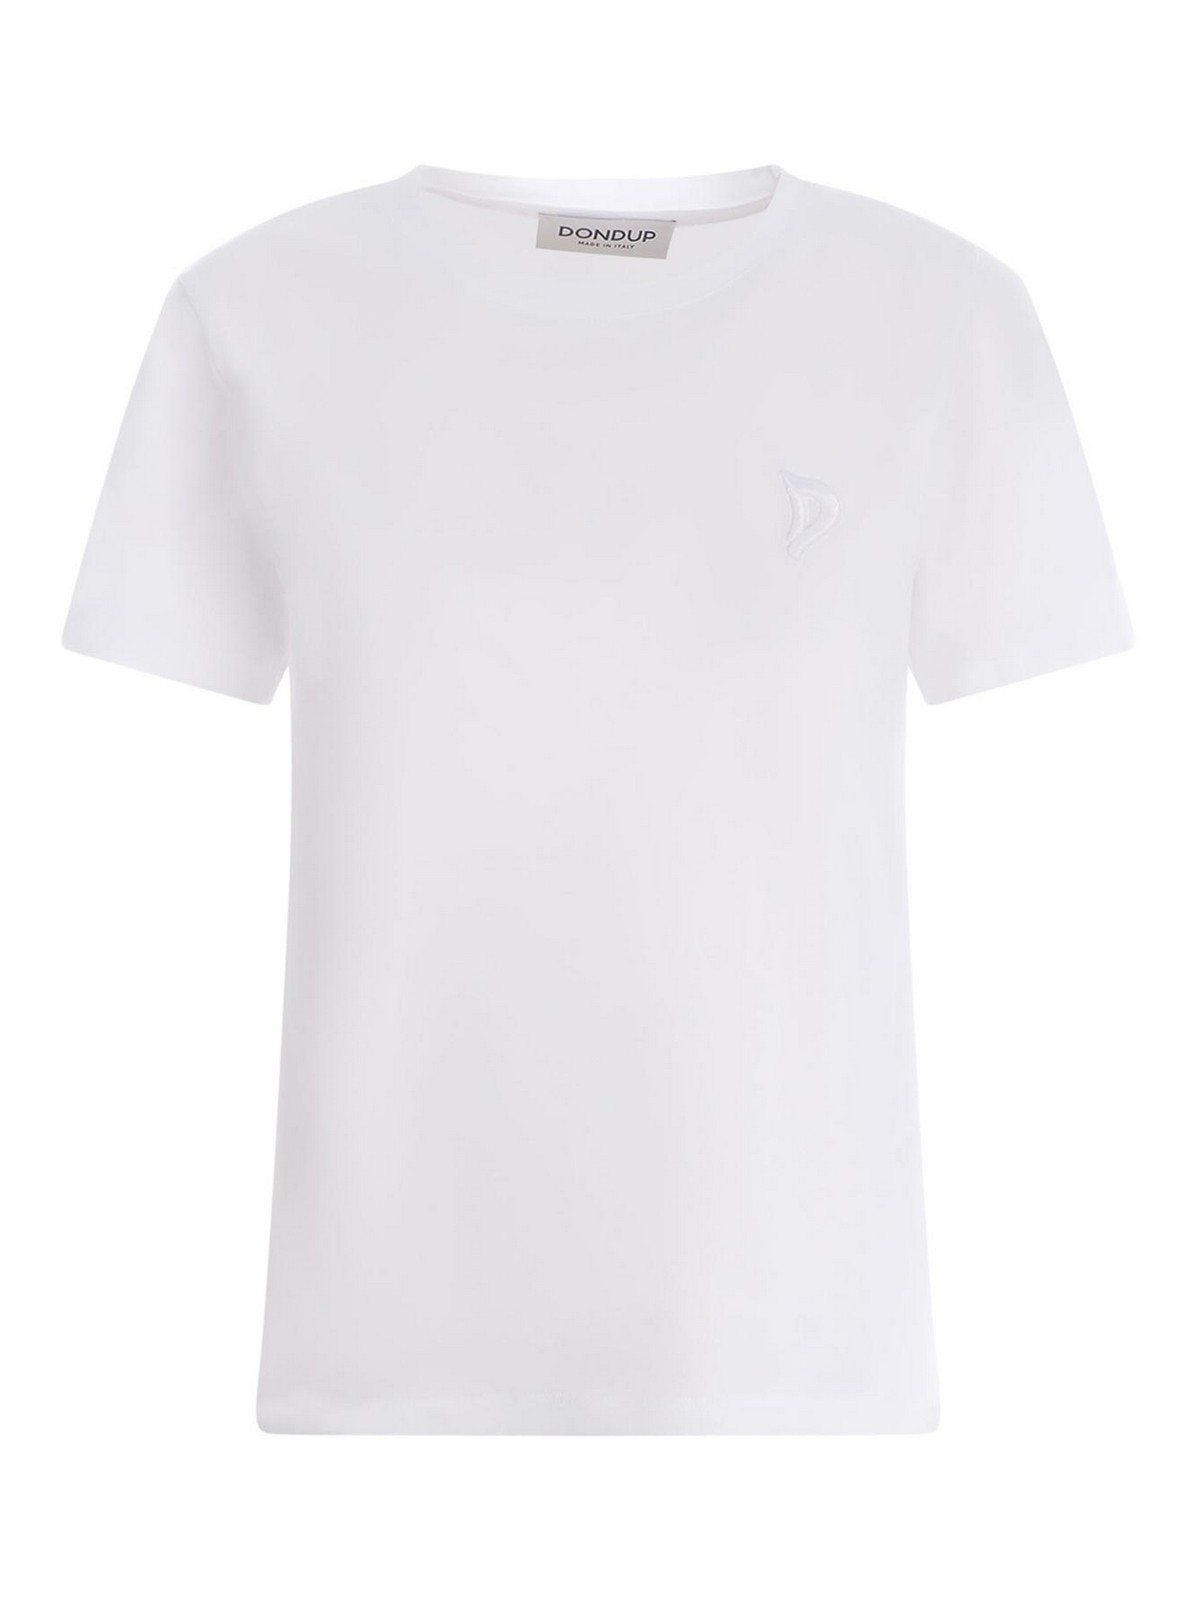 Shop Dondup Camiseta - D In White